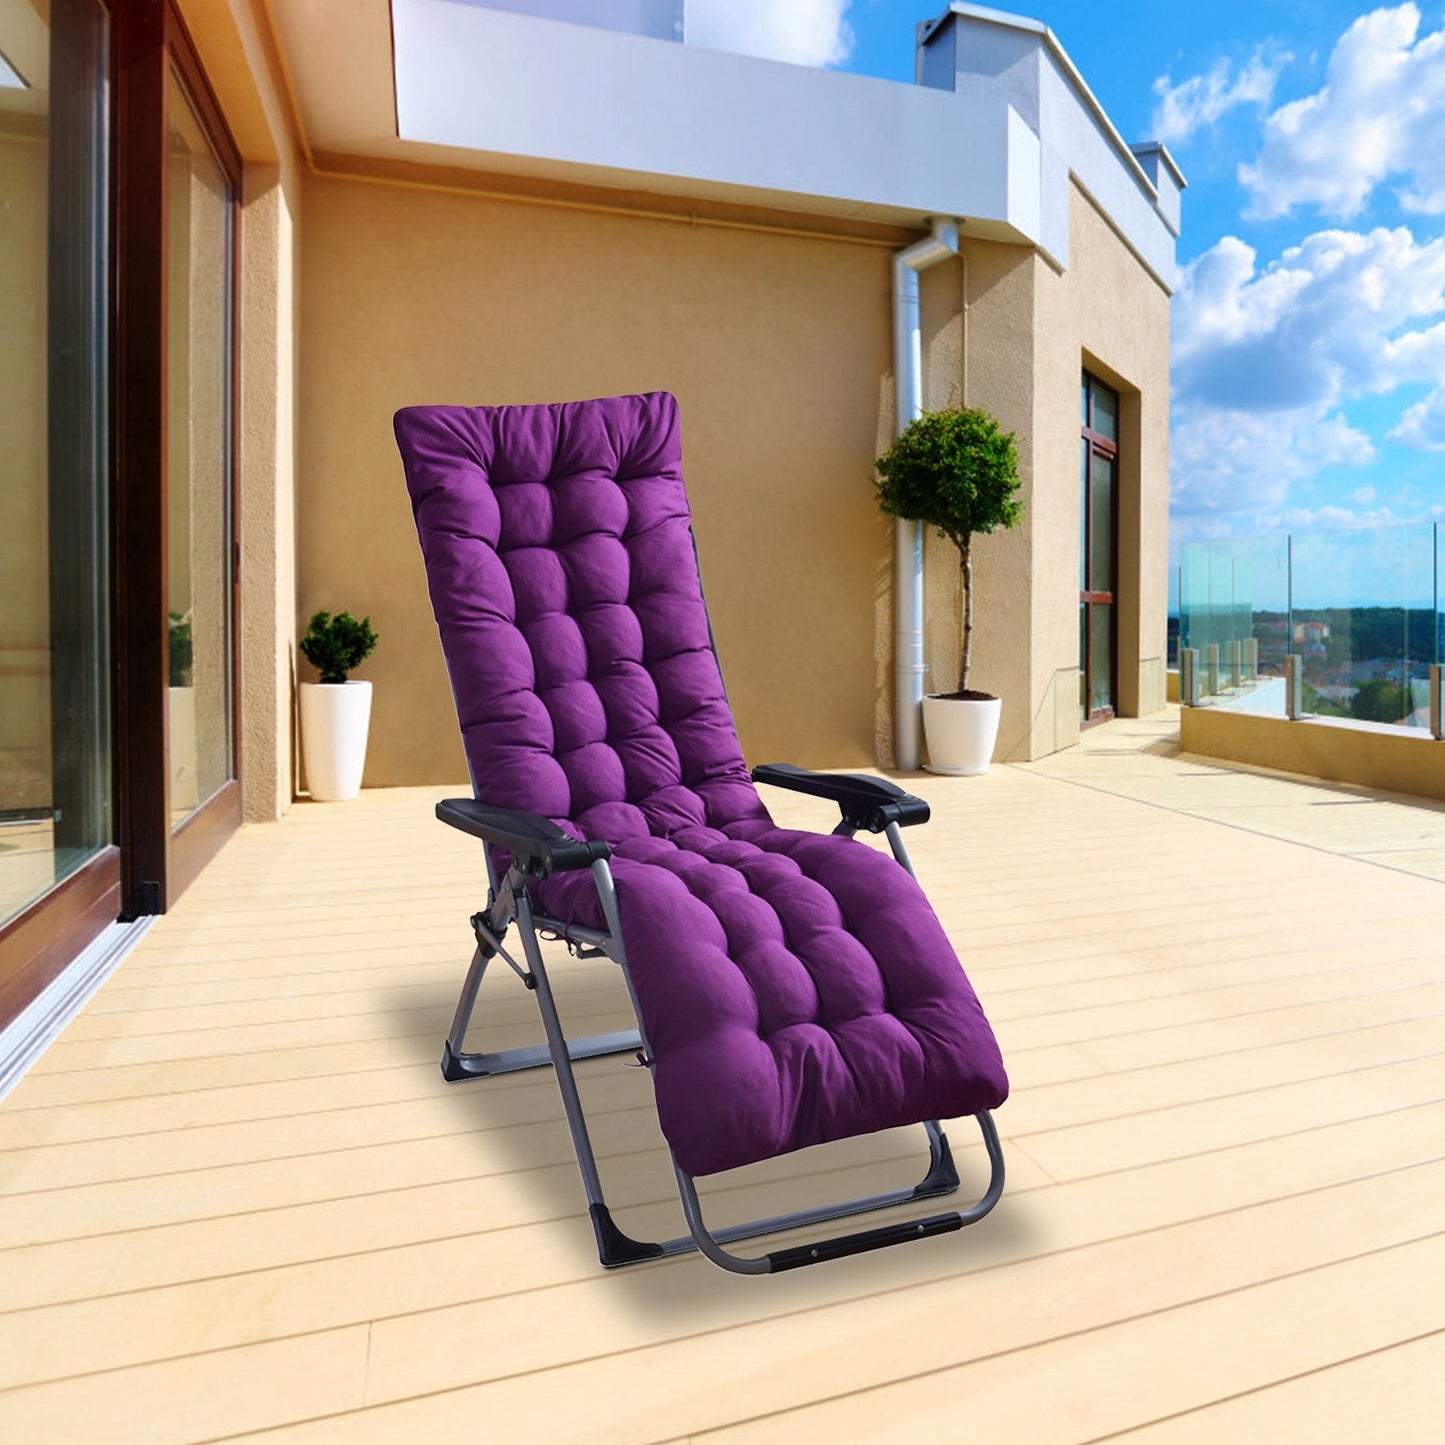 67x22in Chaise Lounger Cushion Recliner Rocking Chair Sofa Mat Deck Chair Cushion